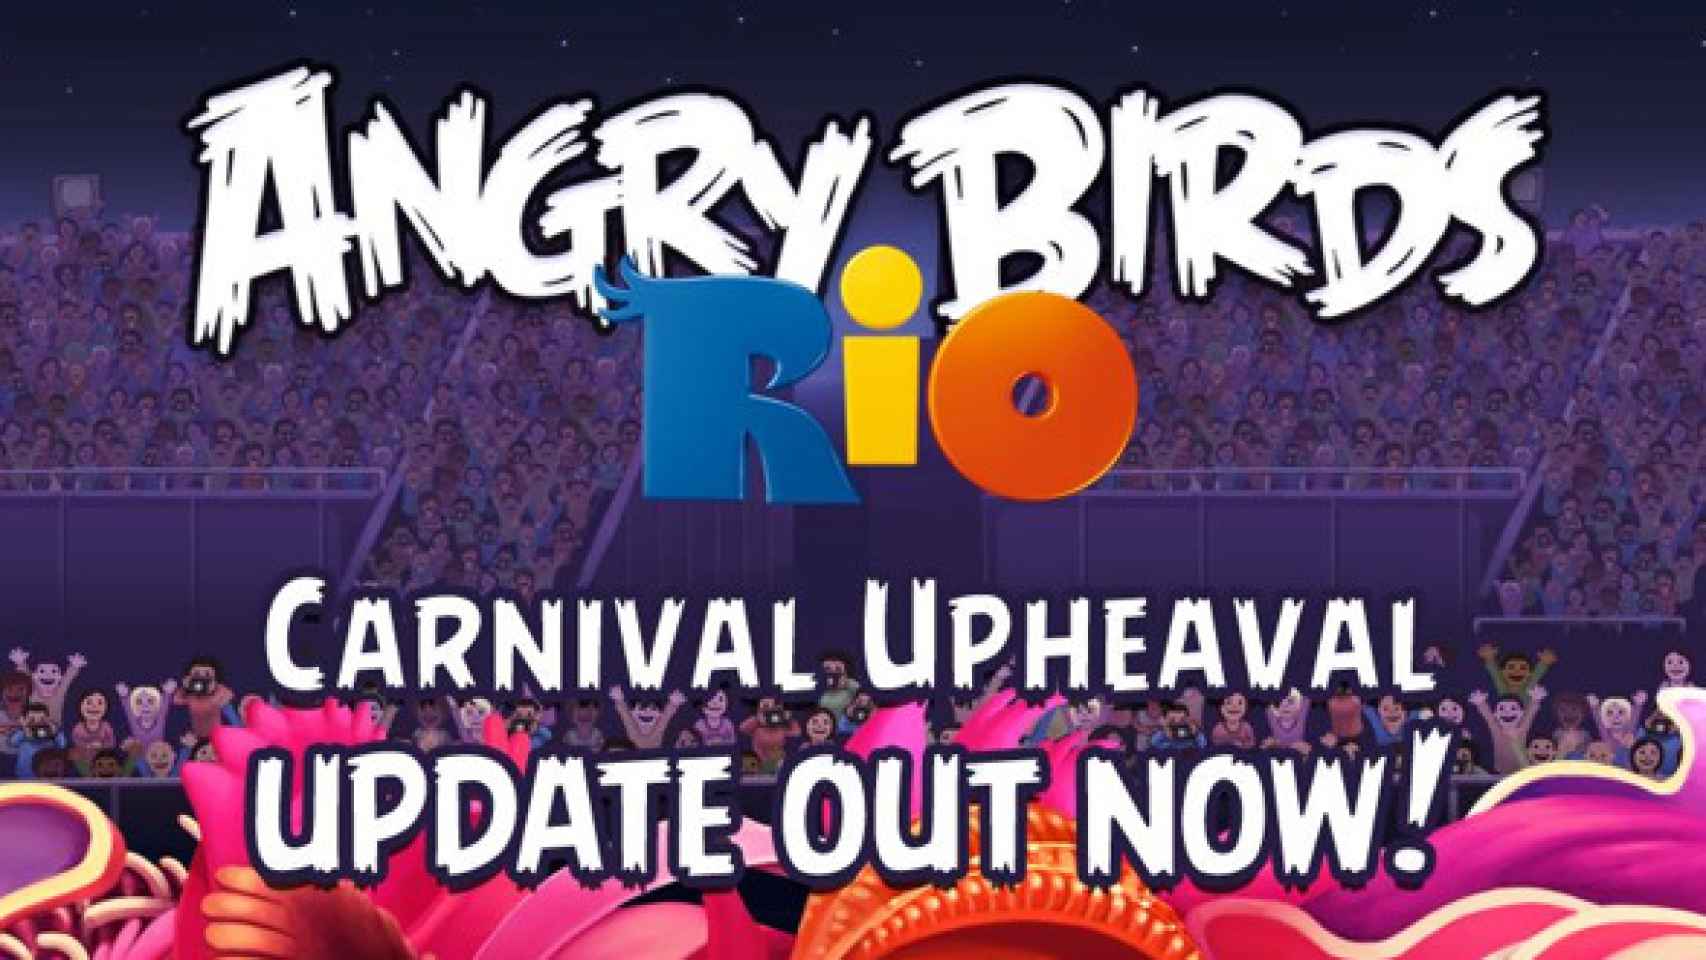 Nuevo Angry Birds Rio Carnival ya disponible en el Android Market